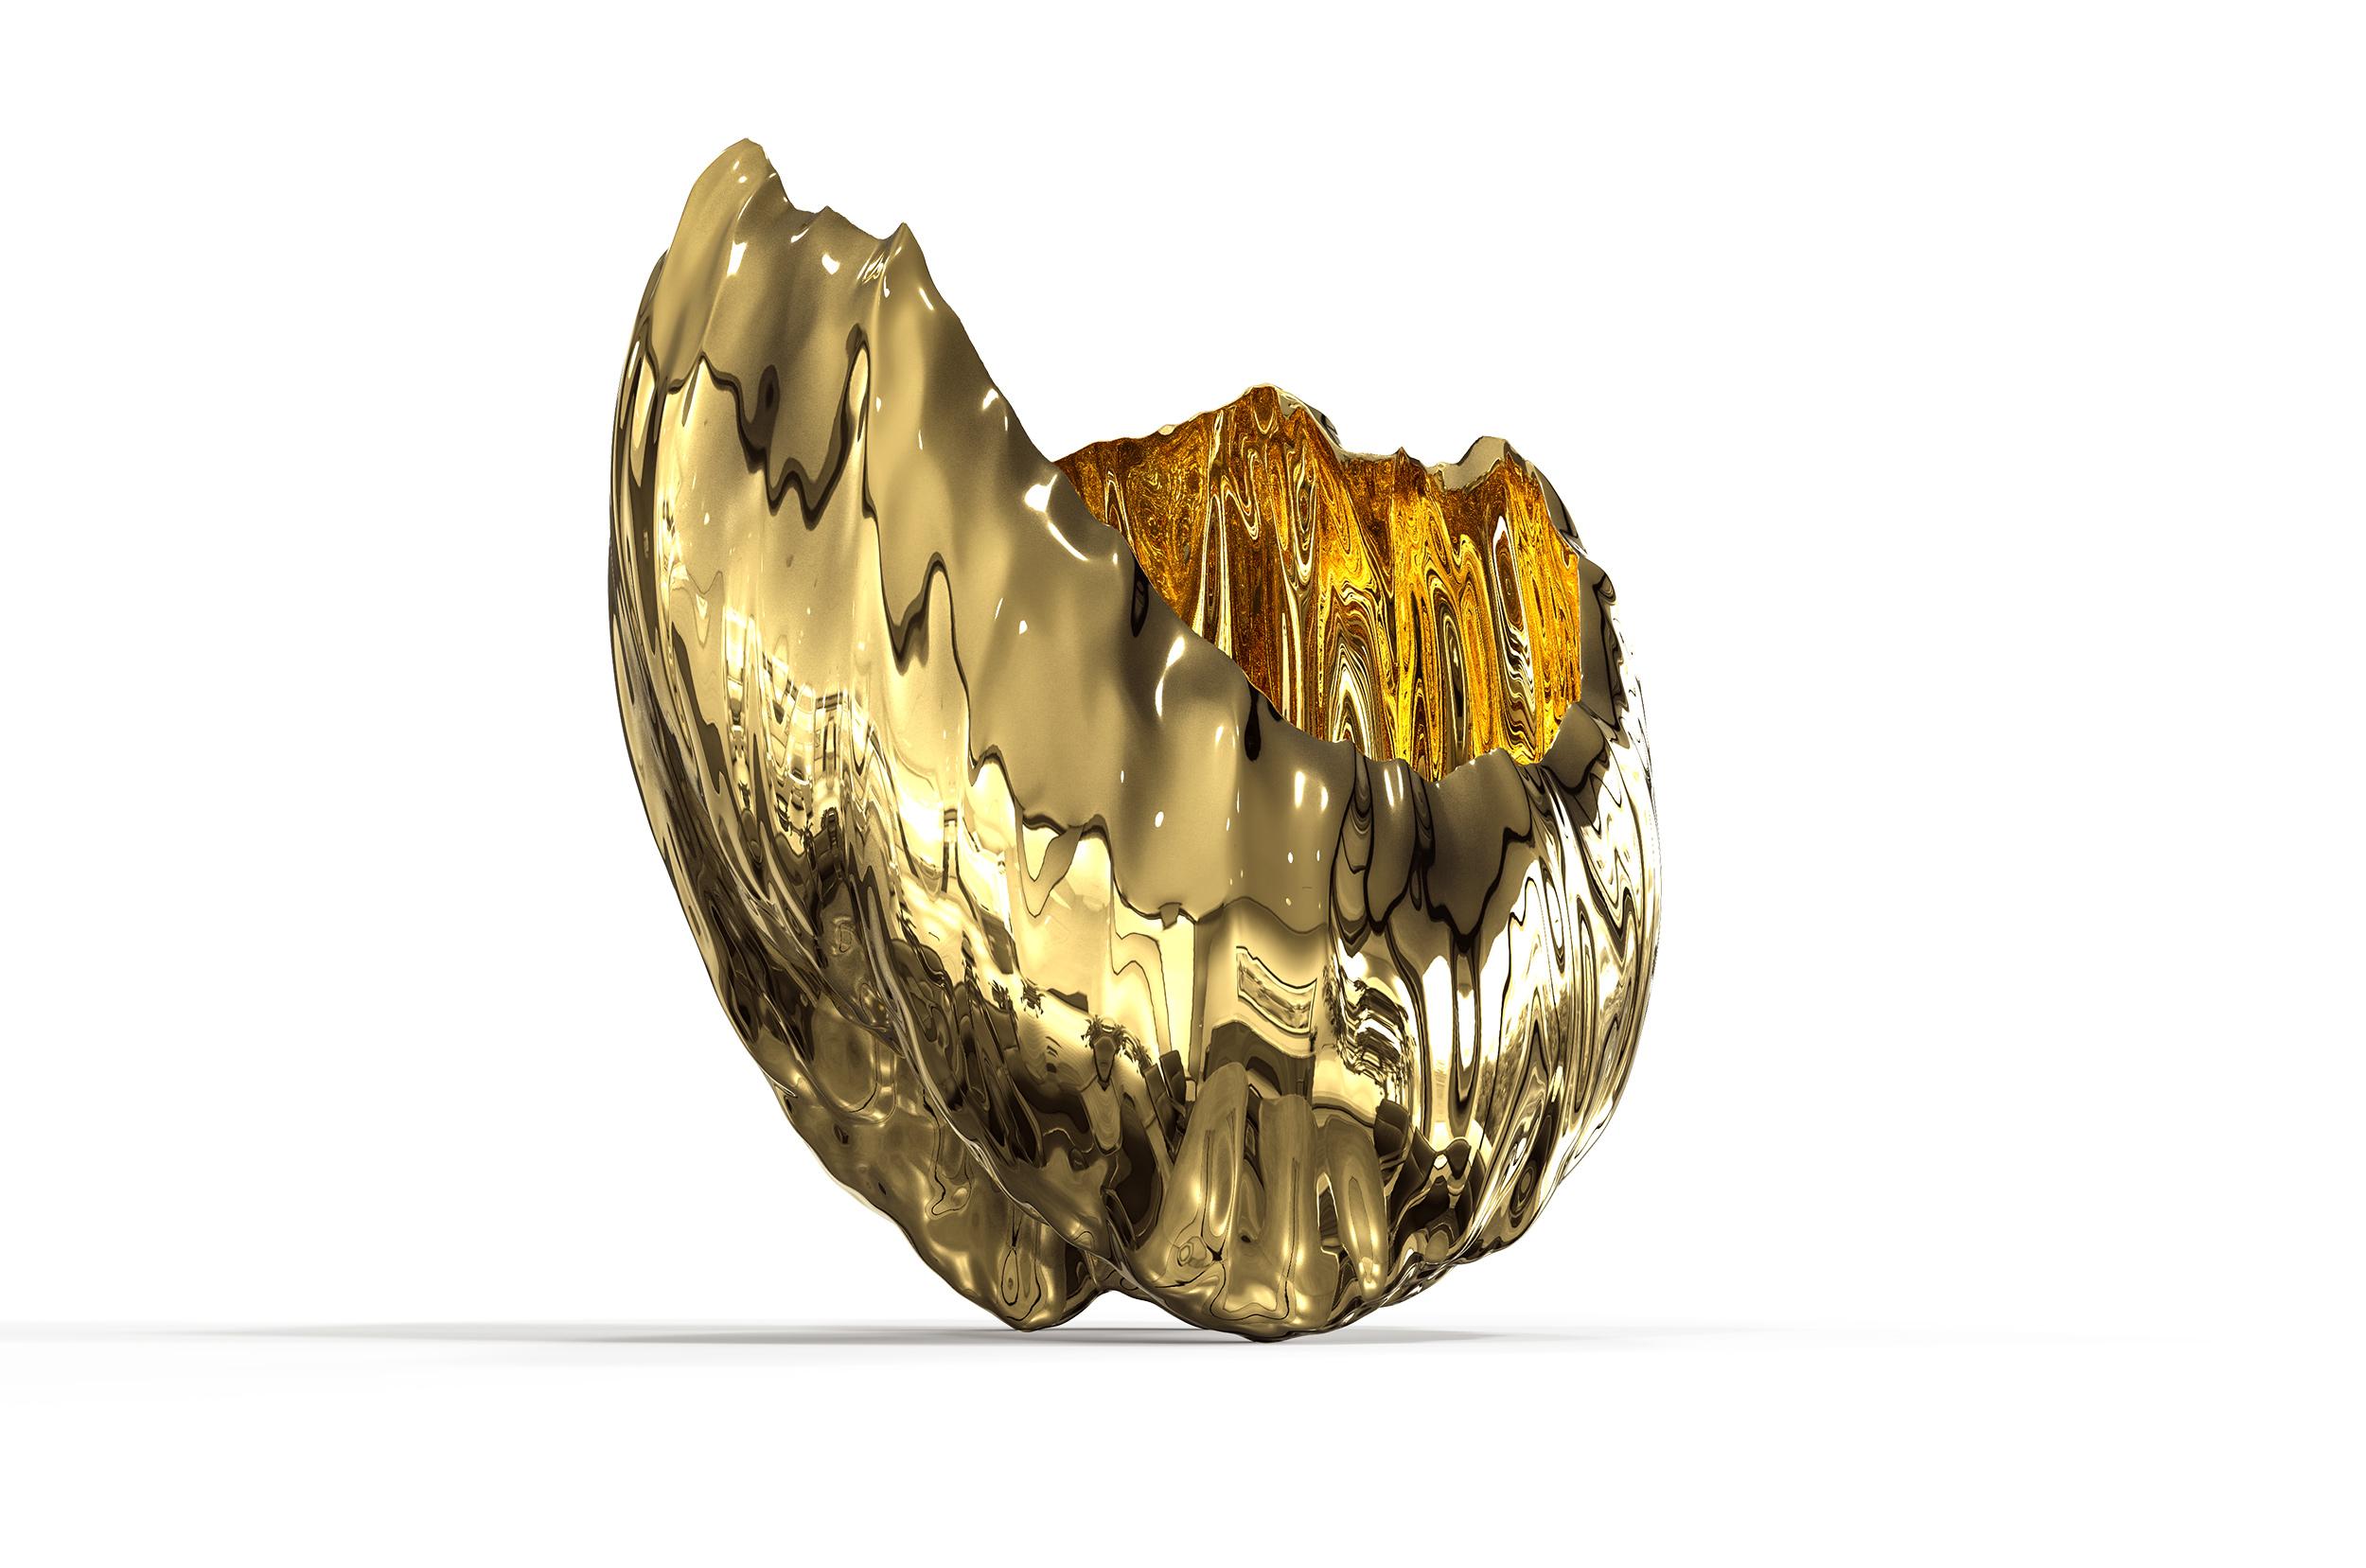 Cast Oceana Bowl Gold Resin Sculpture